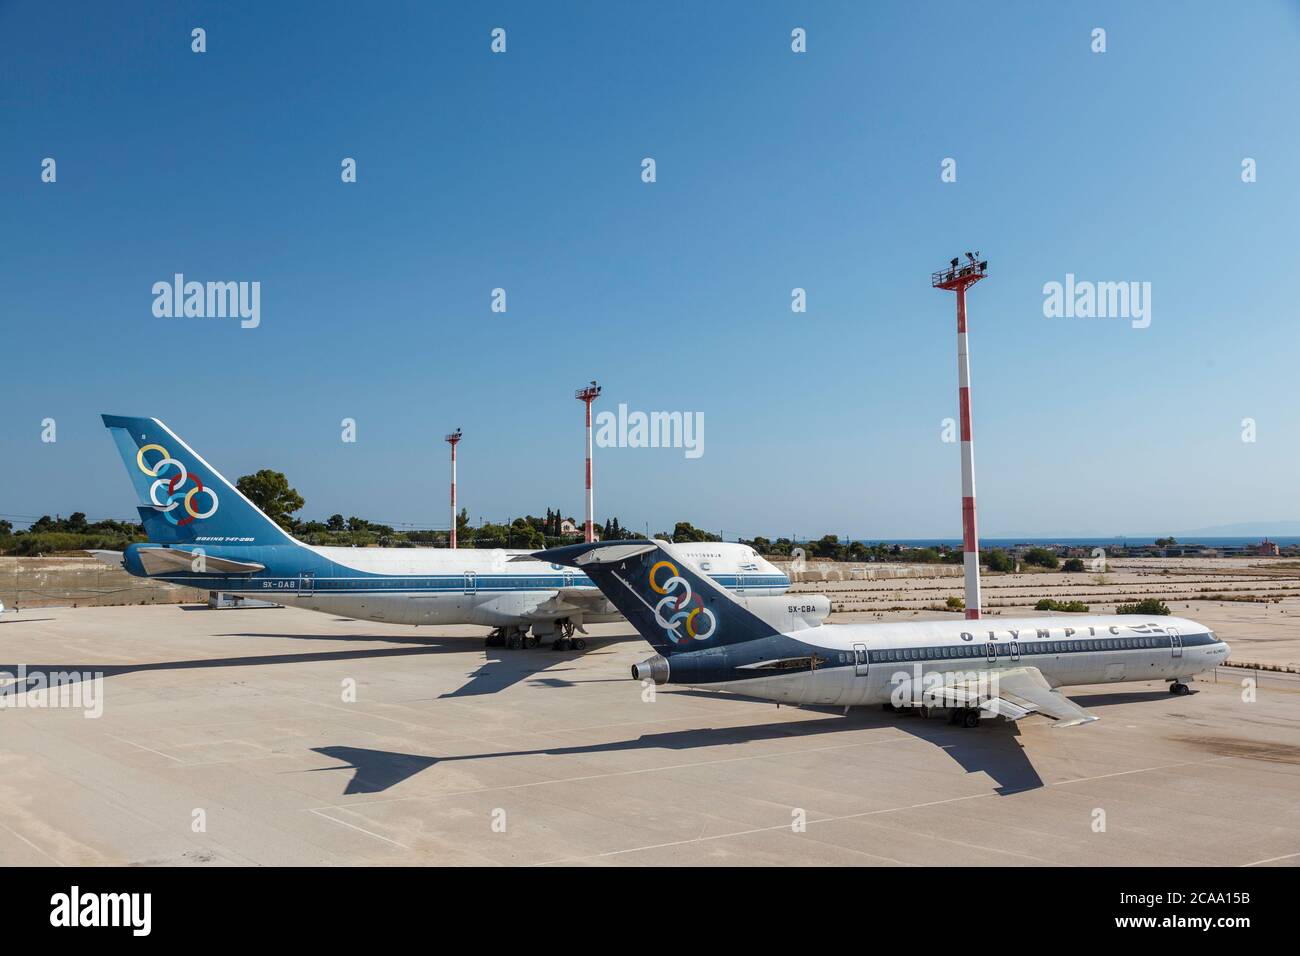 Les anciens Boeing 747 et Boeing 737 ont été mis à la terre dans l'ancien aéroport d'Elliniko, dans le sud d'Athènes, dans la région d'Attica, en Grèce, en Europe. Banque D'Images